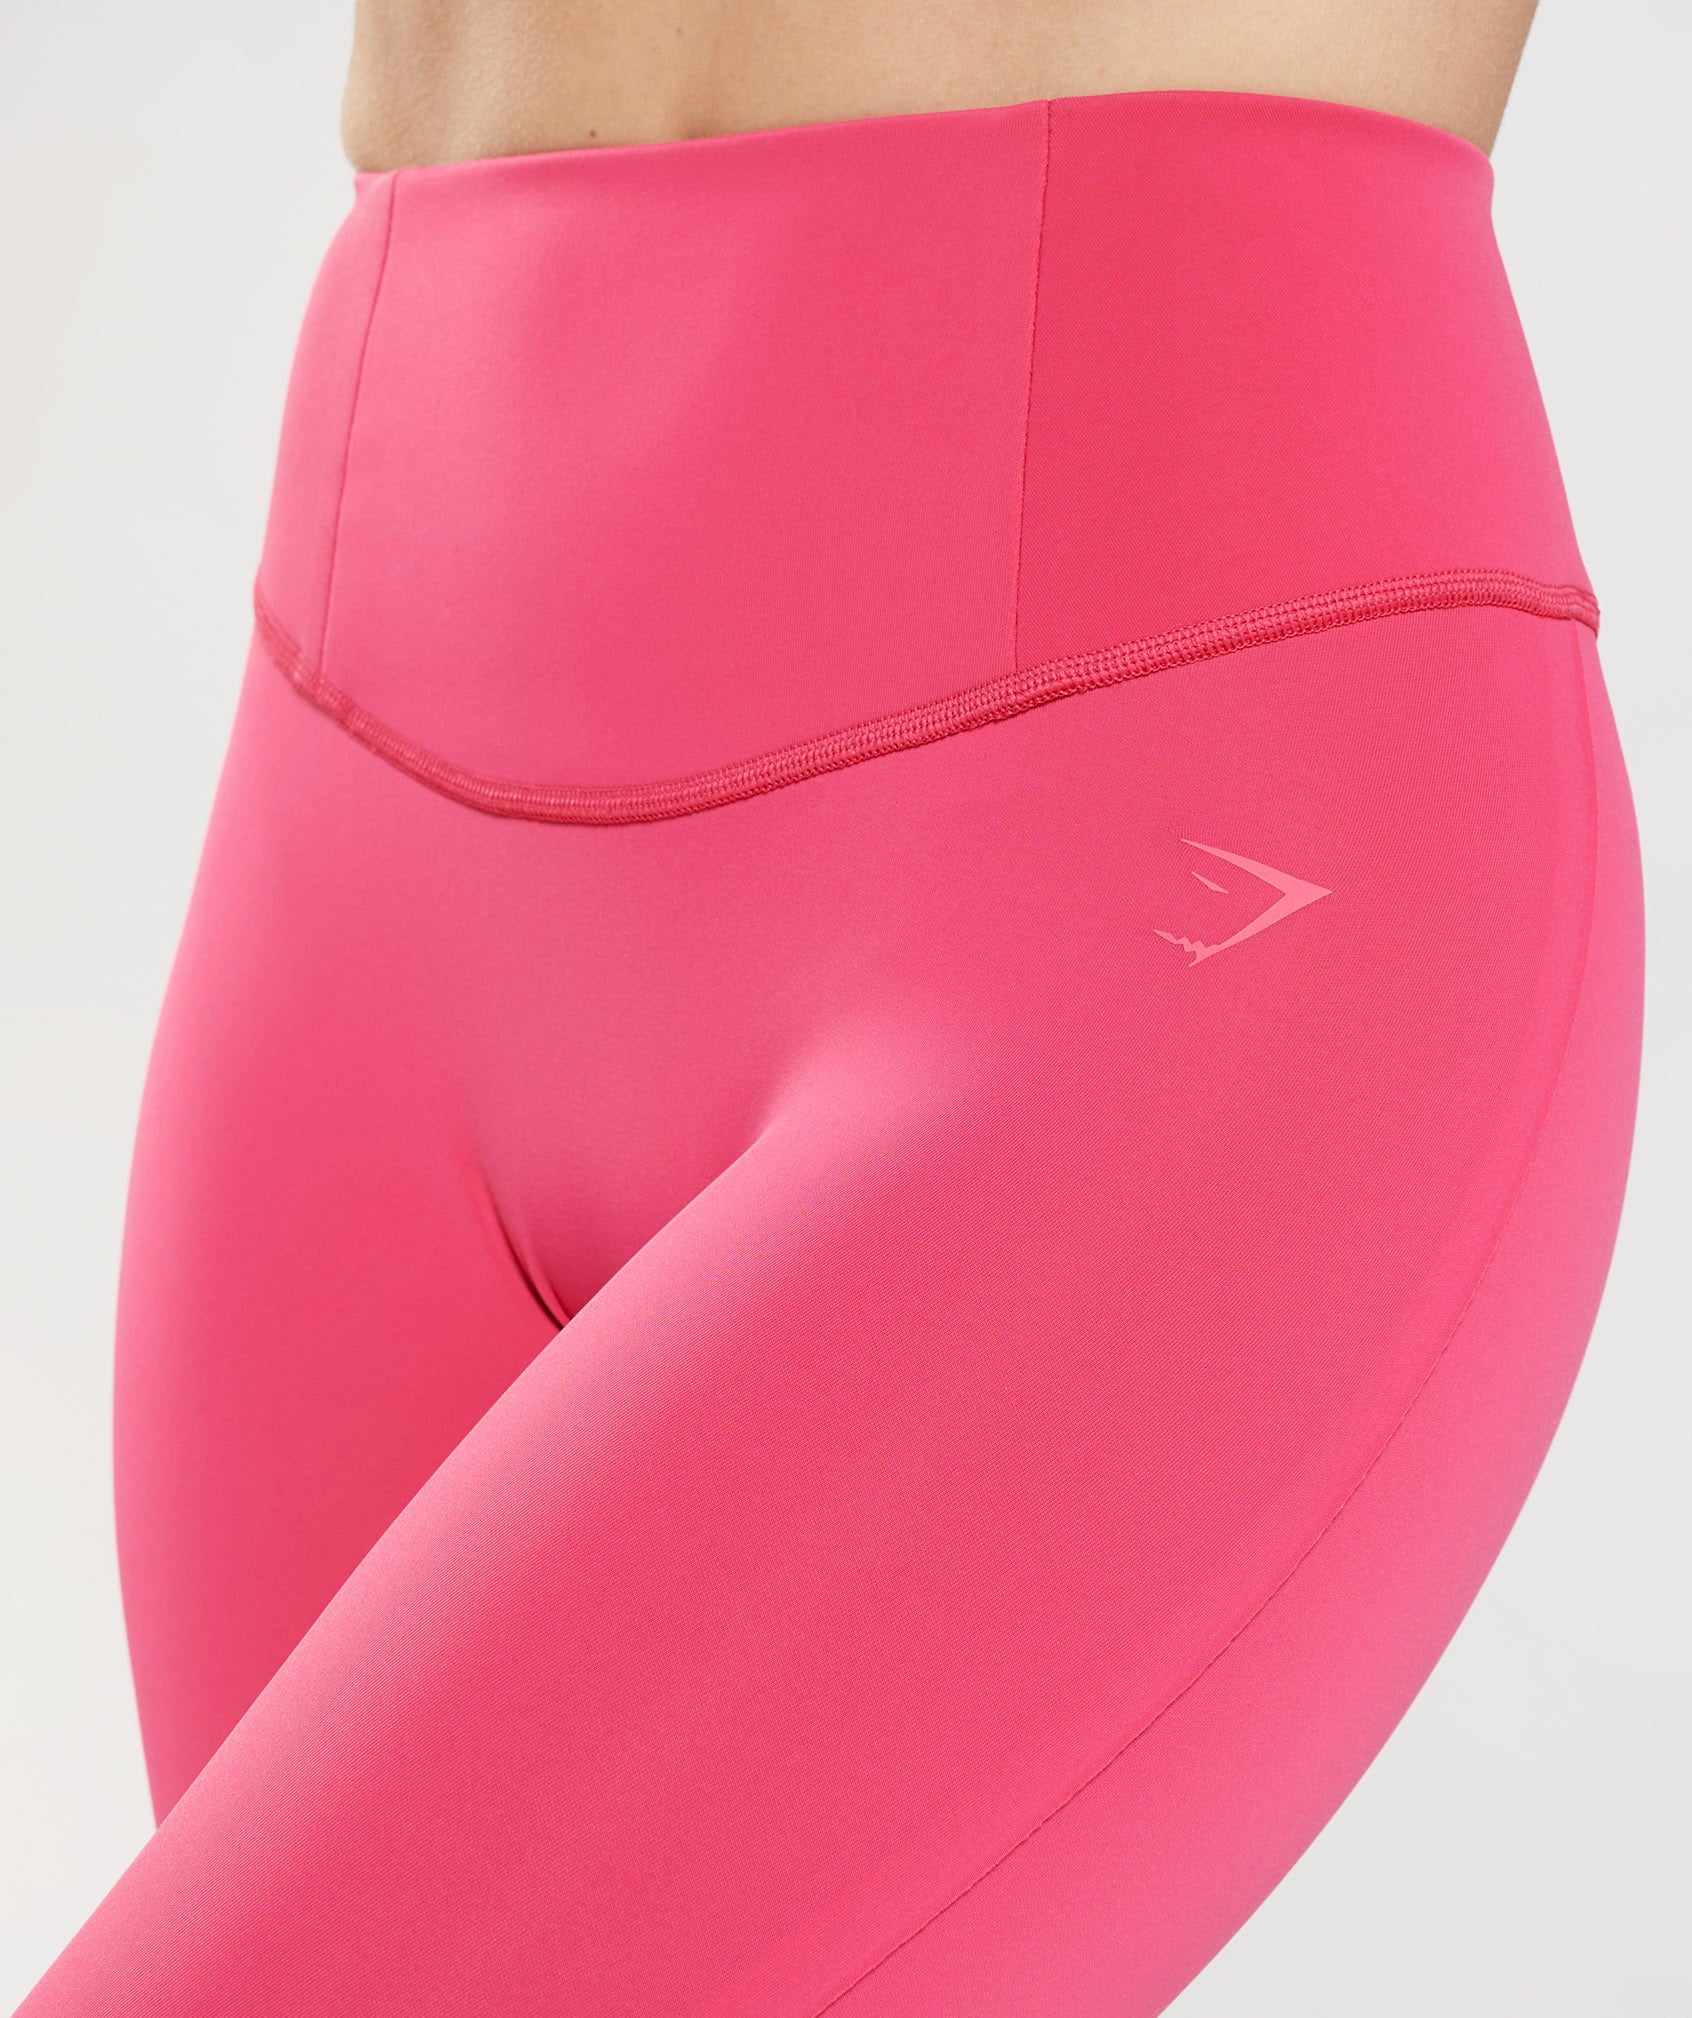 Women's Pink Leggings – Gymshark